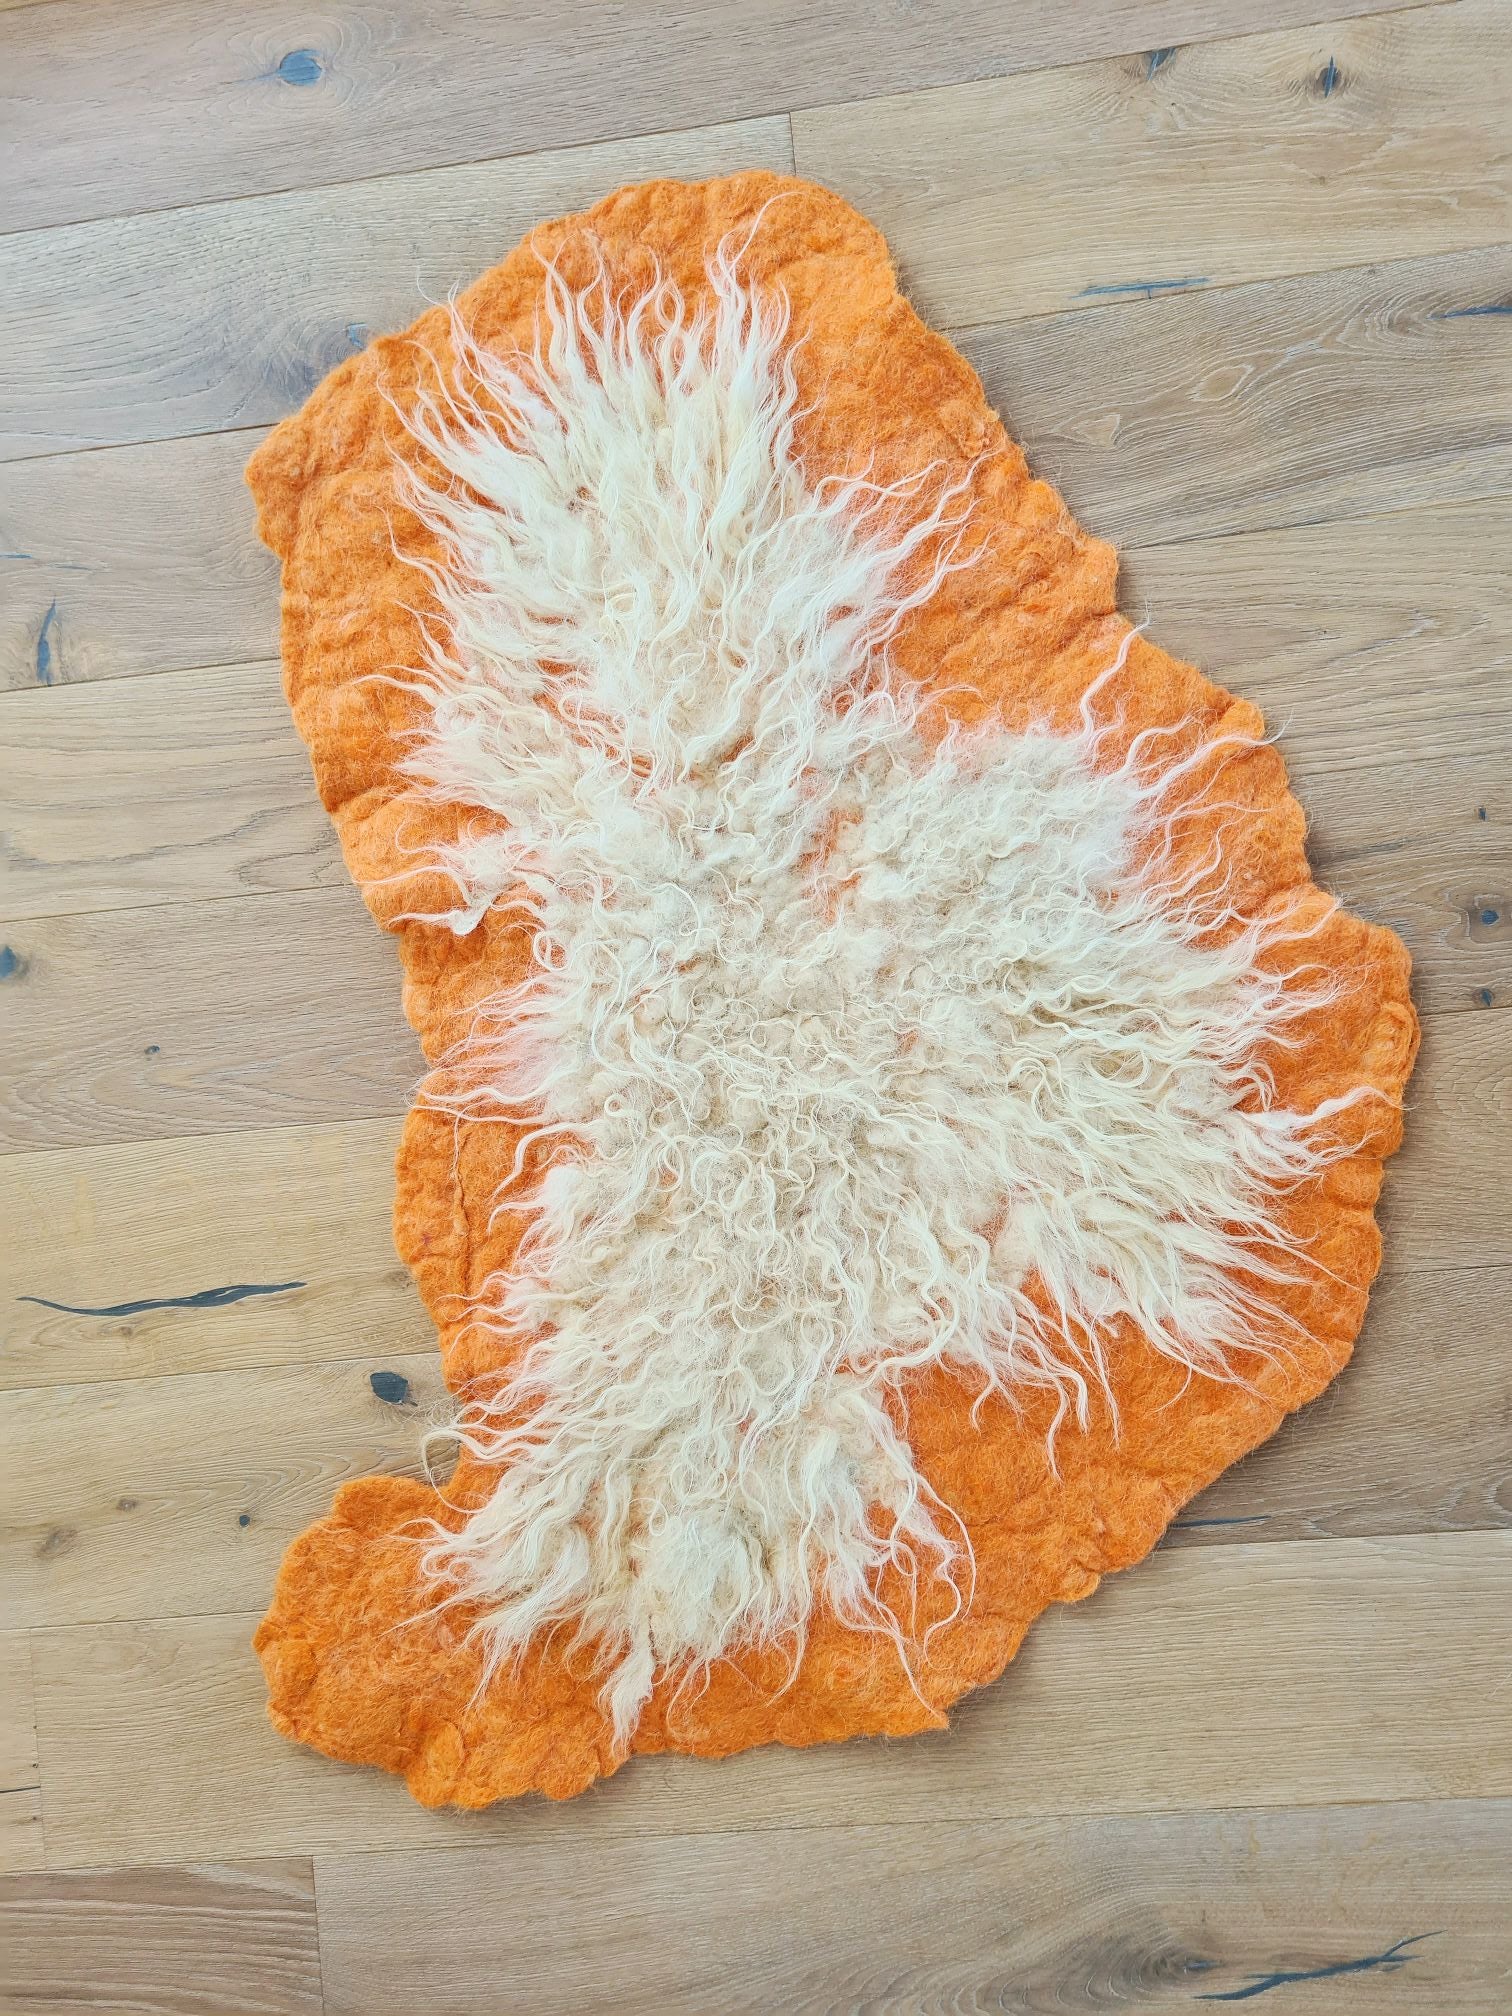 ORNG sheep art rug